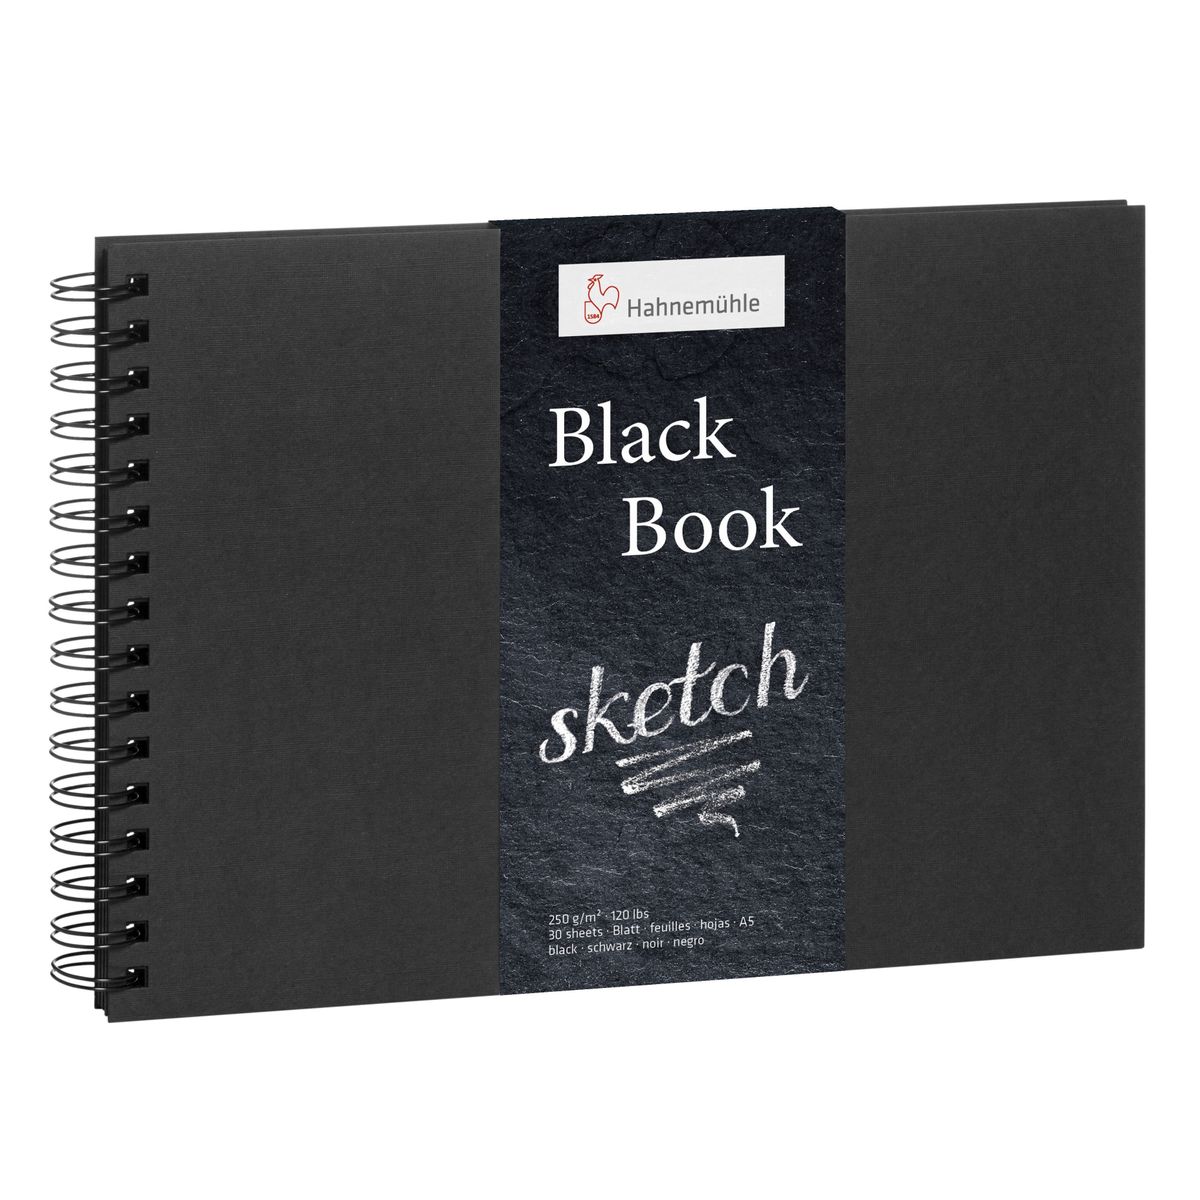 Sketchbook Hahnemühle Black Book Espiral A5 250g/m² 30 Folhas 